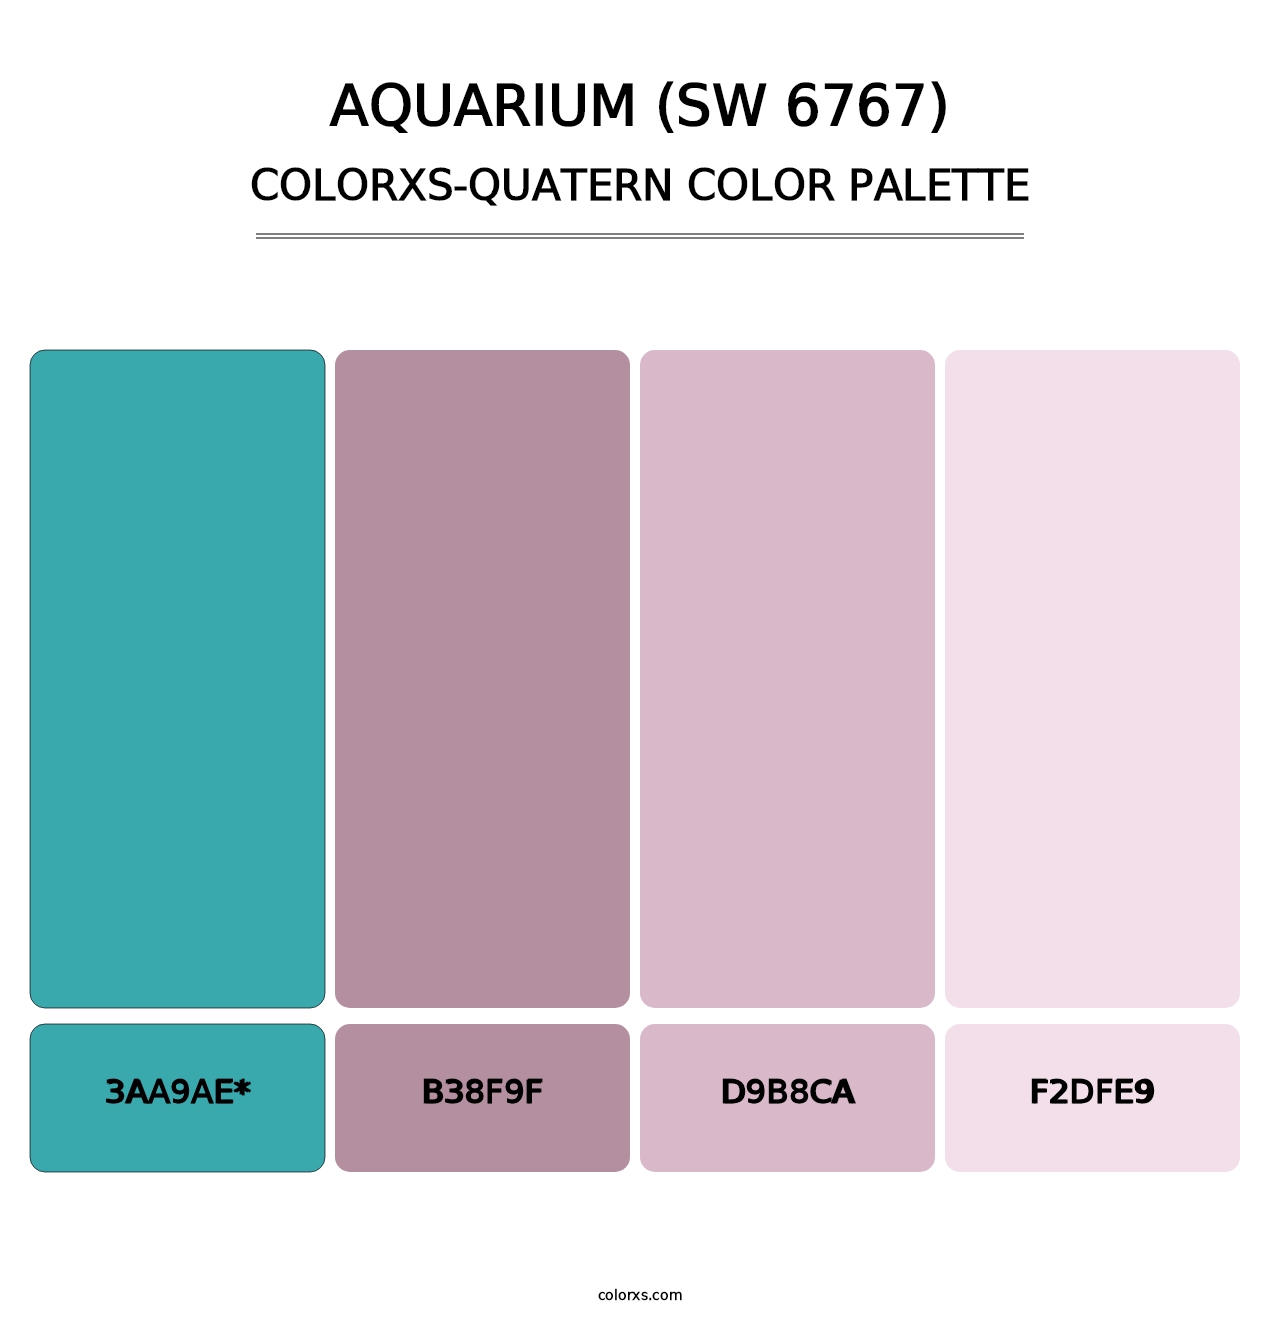 Aquarium (SW 6767) - Colorxs Quatern Palette